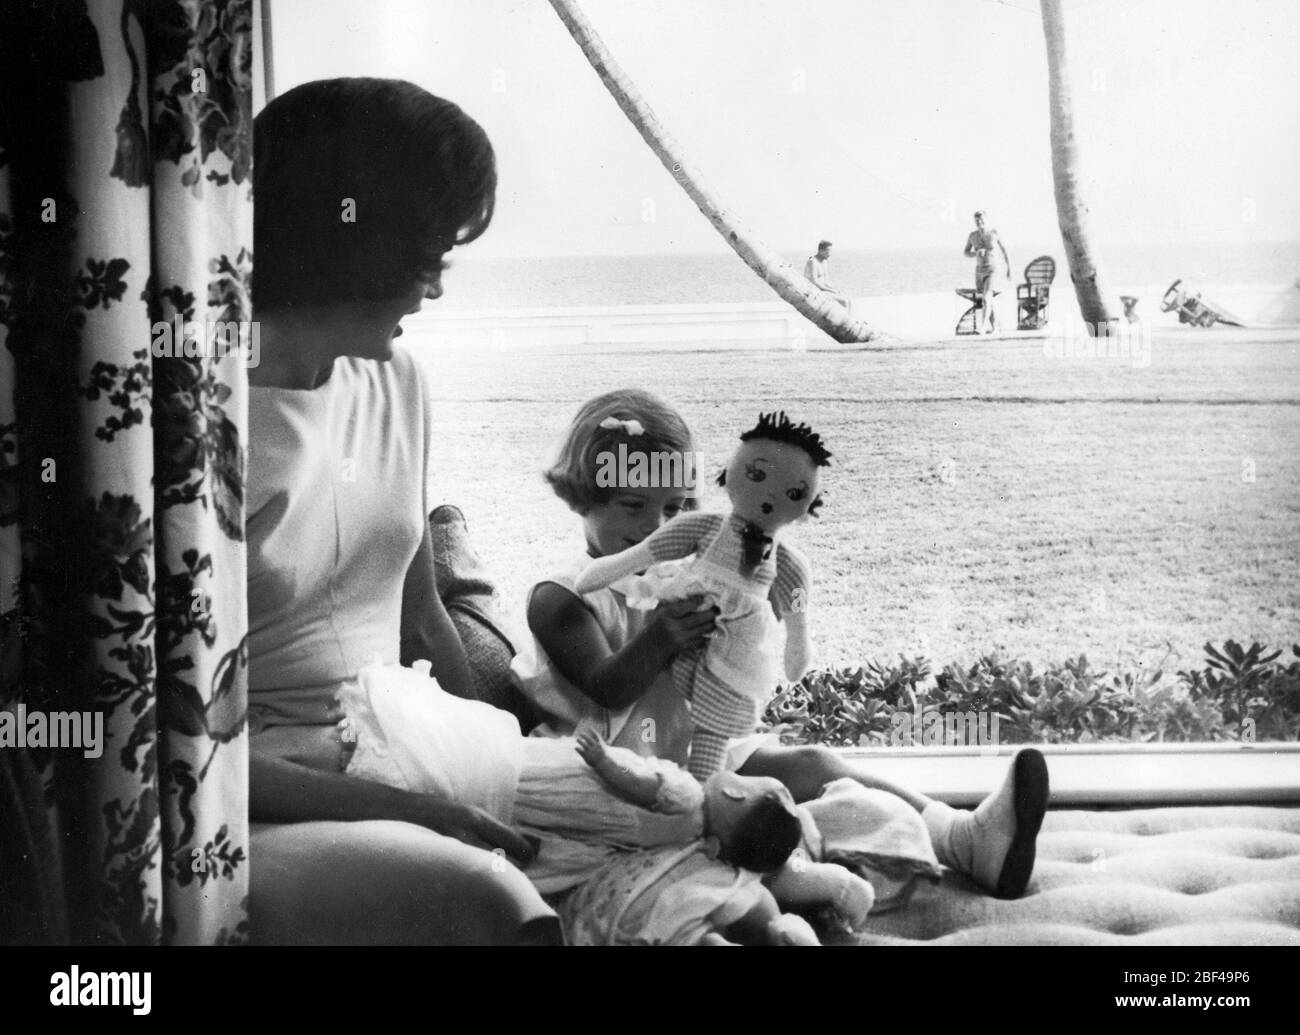 First Lady der Vereinigten Staaten JACQUELINE KENNEDY Tochter CAROLINE KENNEDY. Präsident John F. KENNEDY kann in der Ferne am Strand gesehen werden. Stockfoto